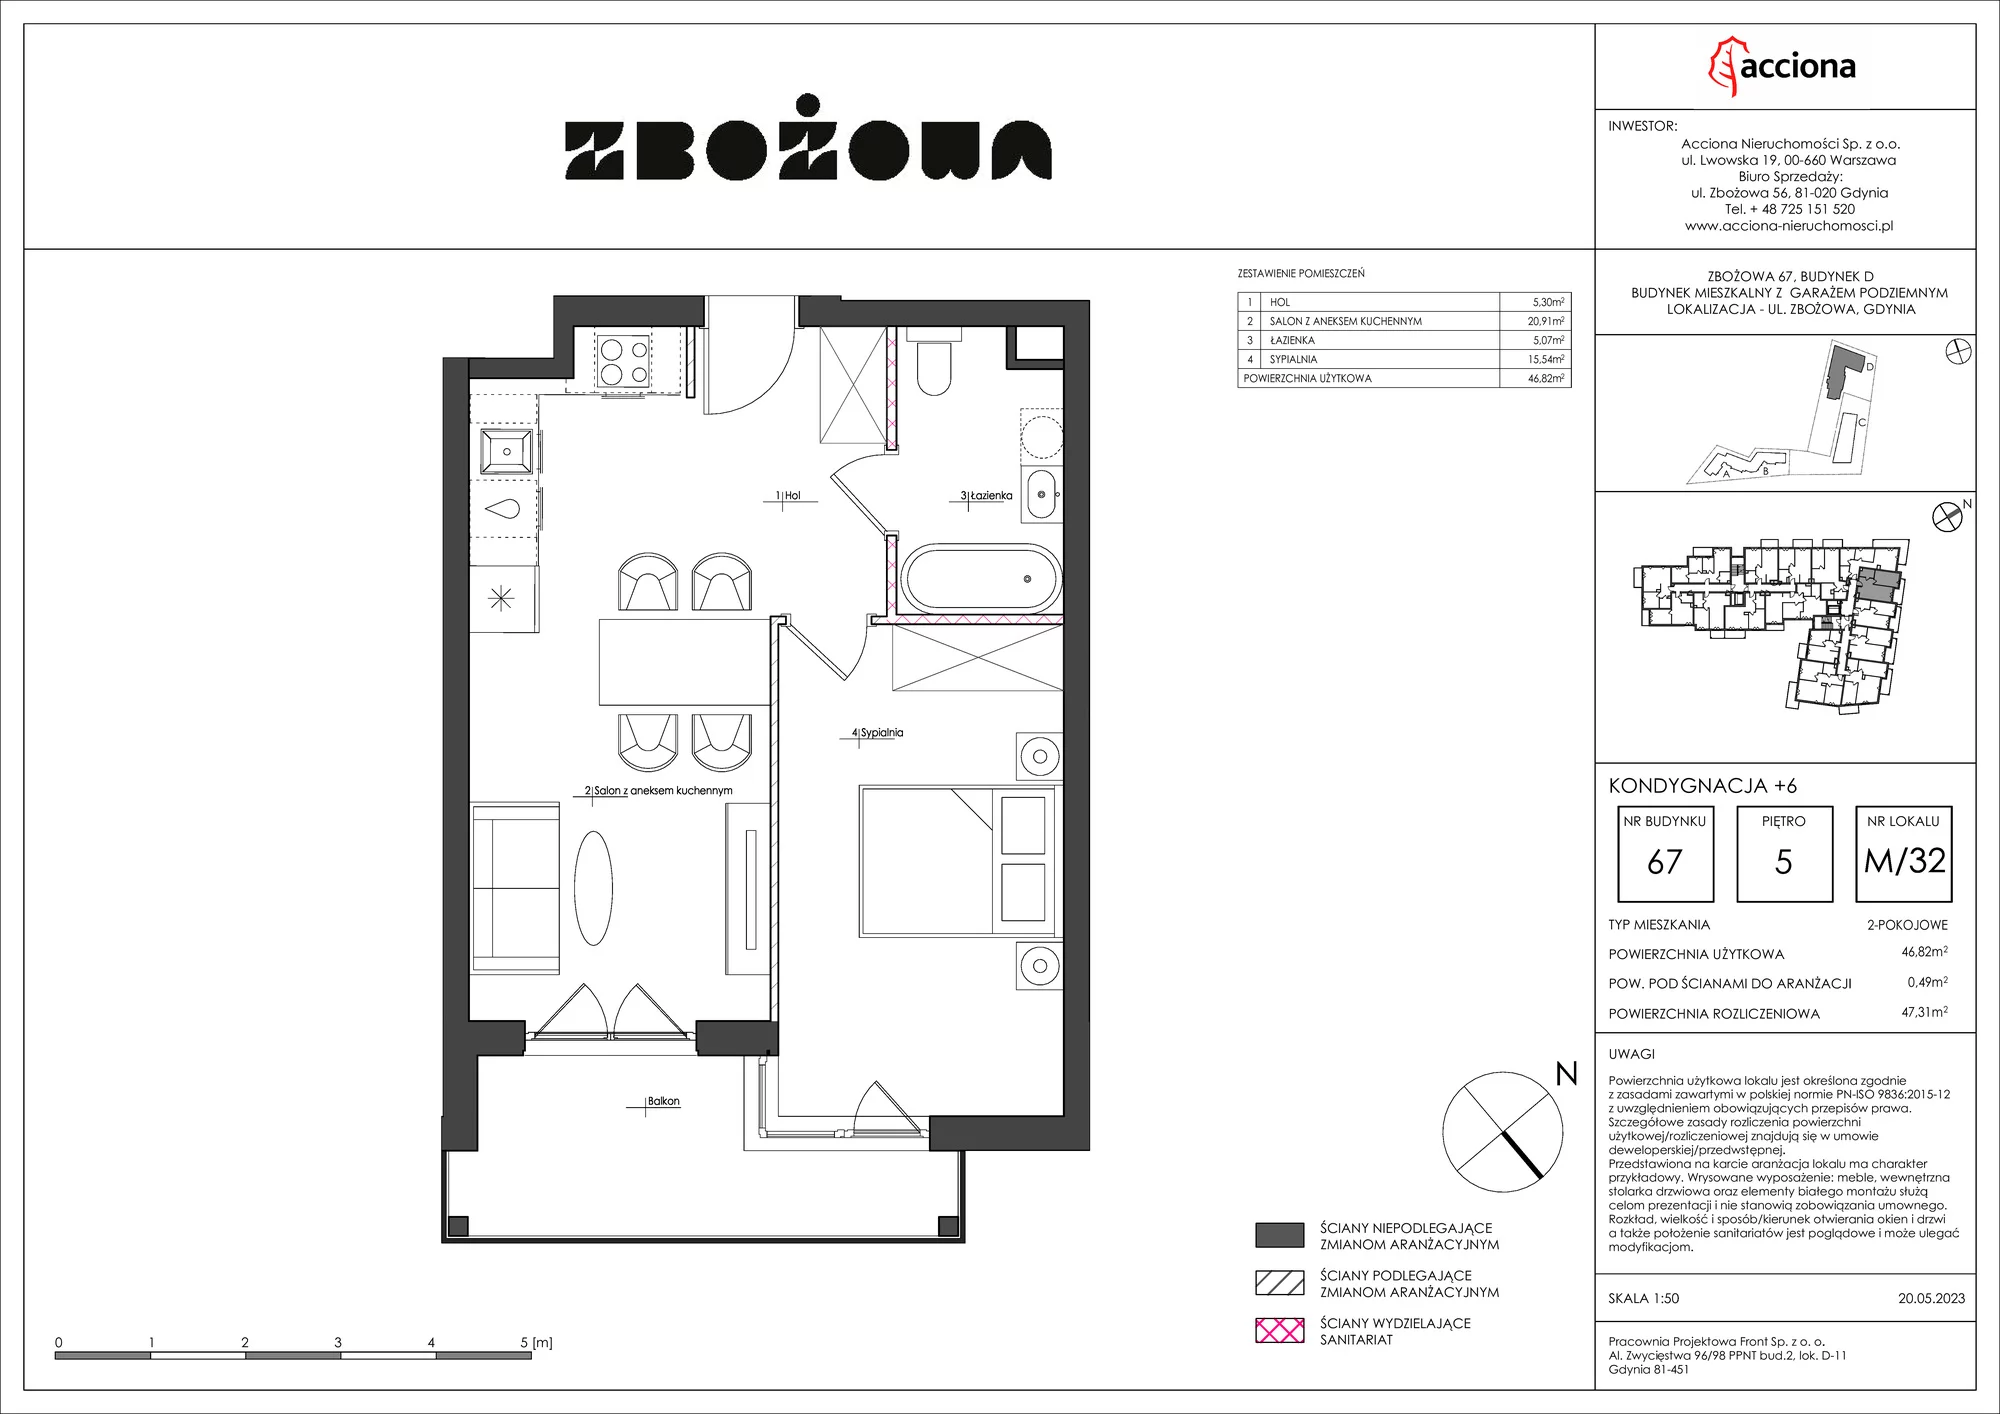 Mieszkanie 47,31 m², piętro 5, oferta nr 67.32, Zbożowa, Gdynia, Cisowa, ul. Zbożowa